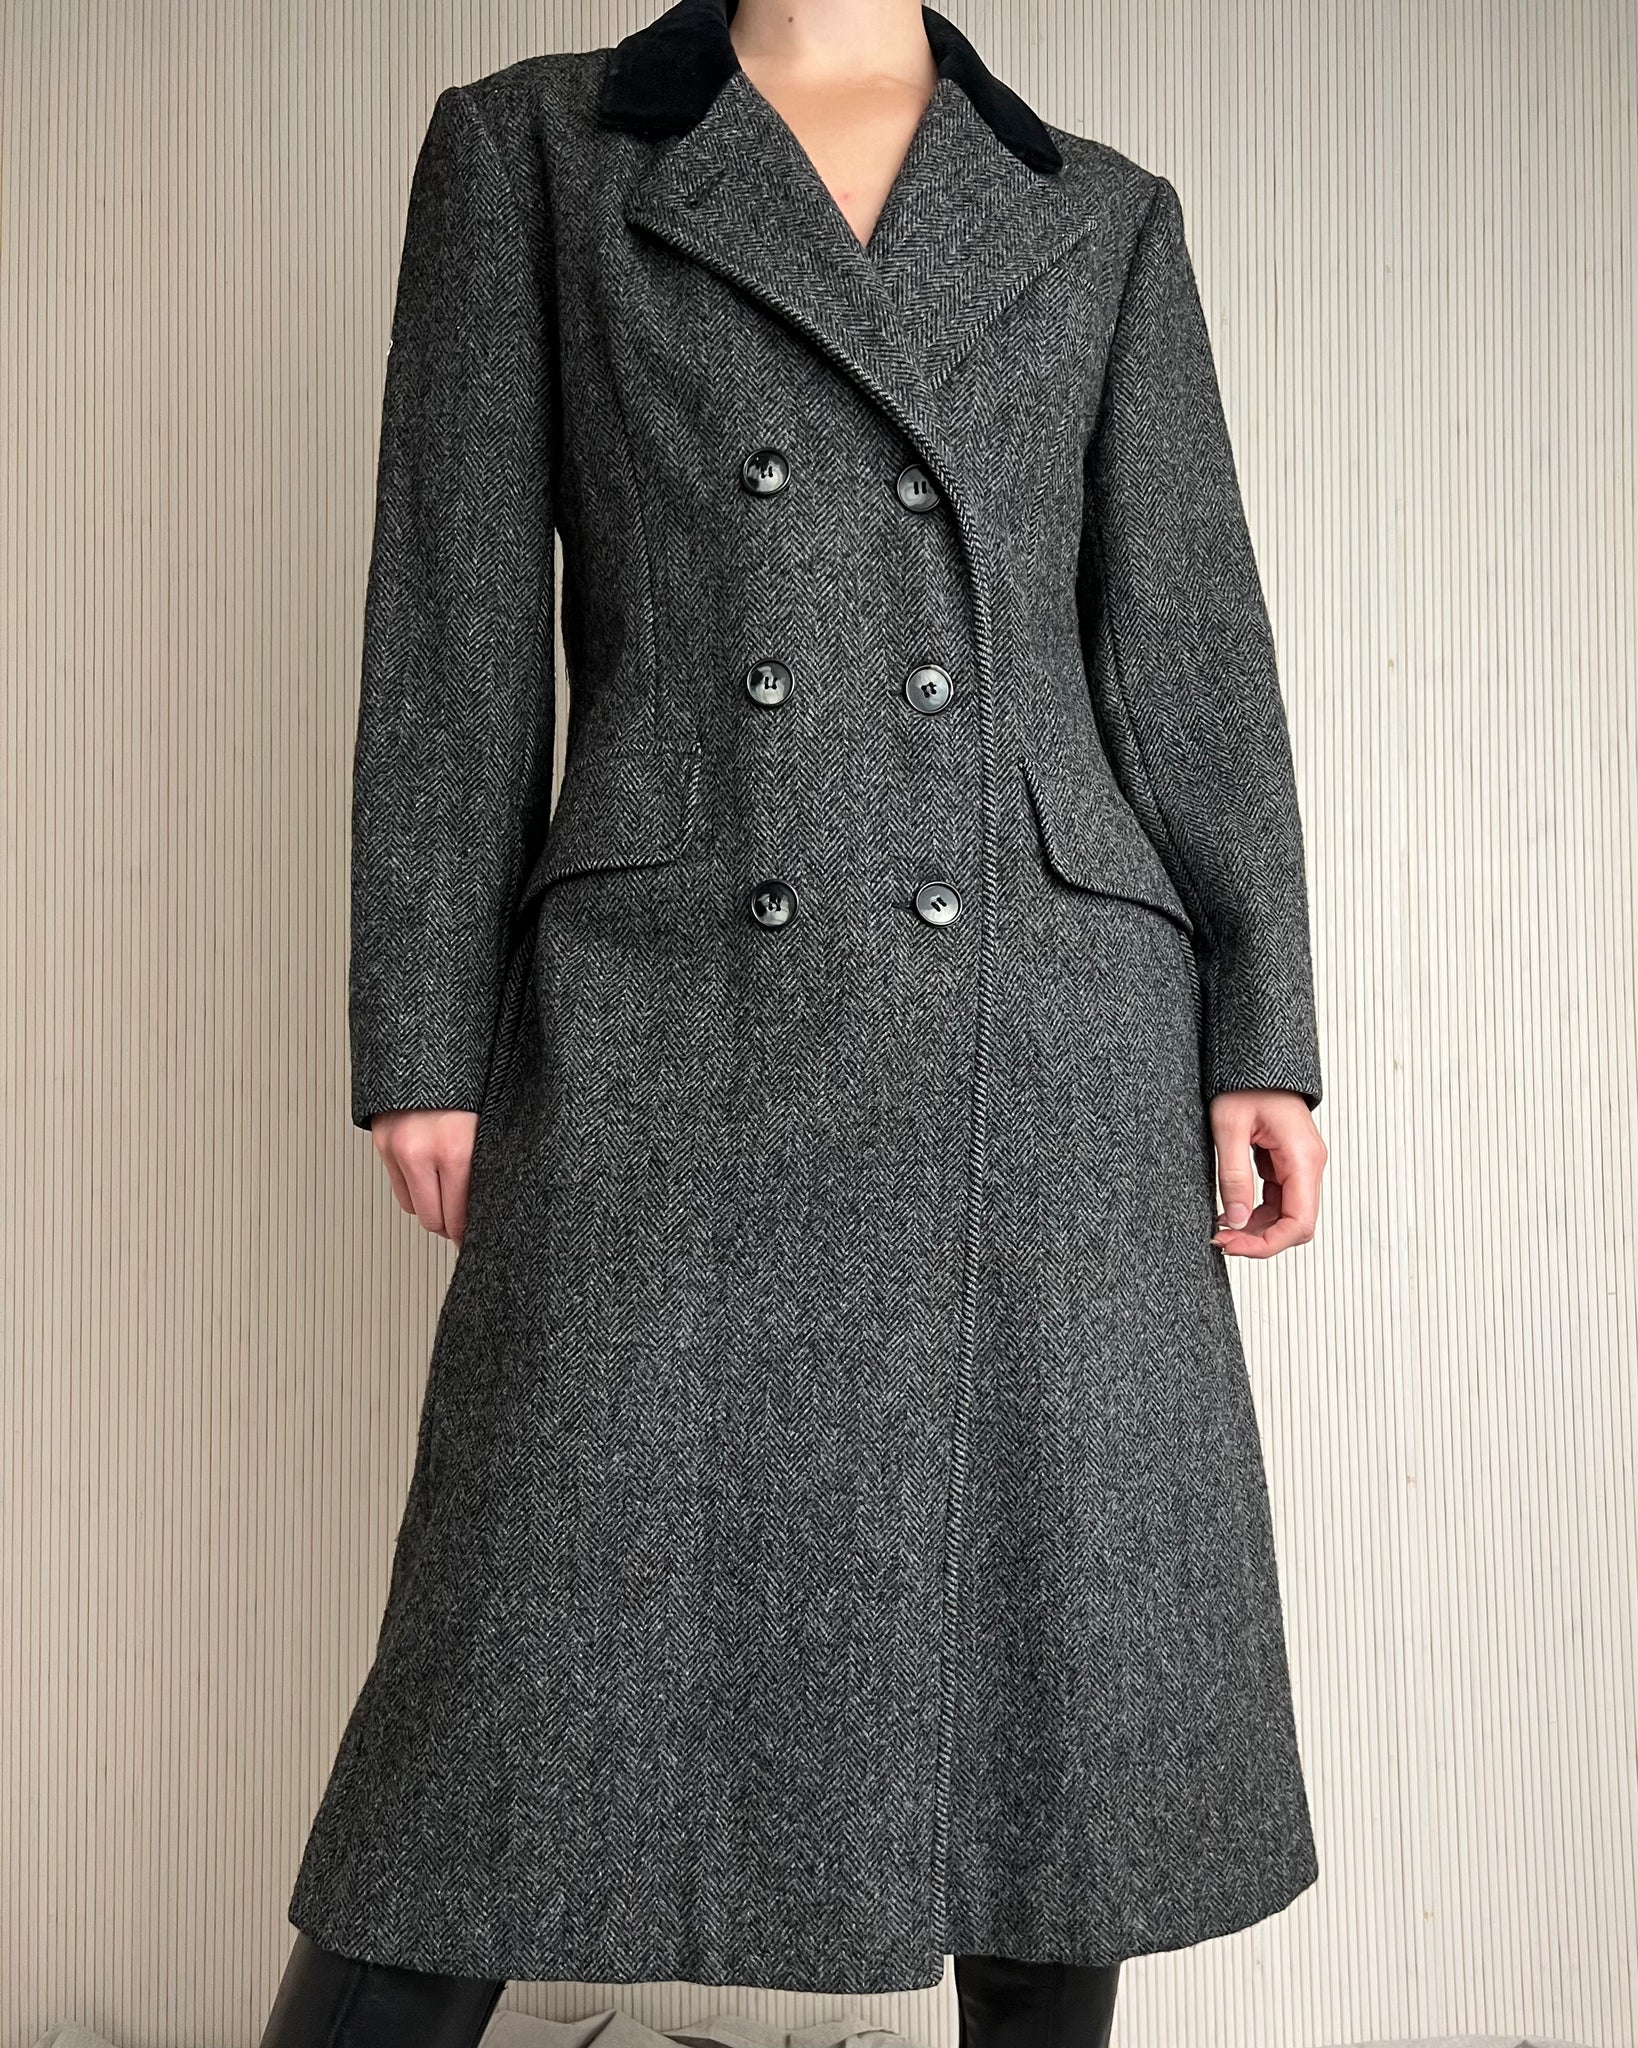 90's Herringbone Wool Coat (Fits S/M)